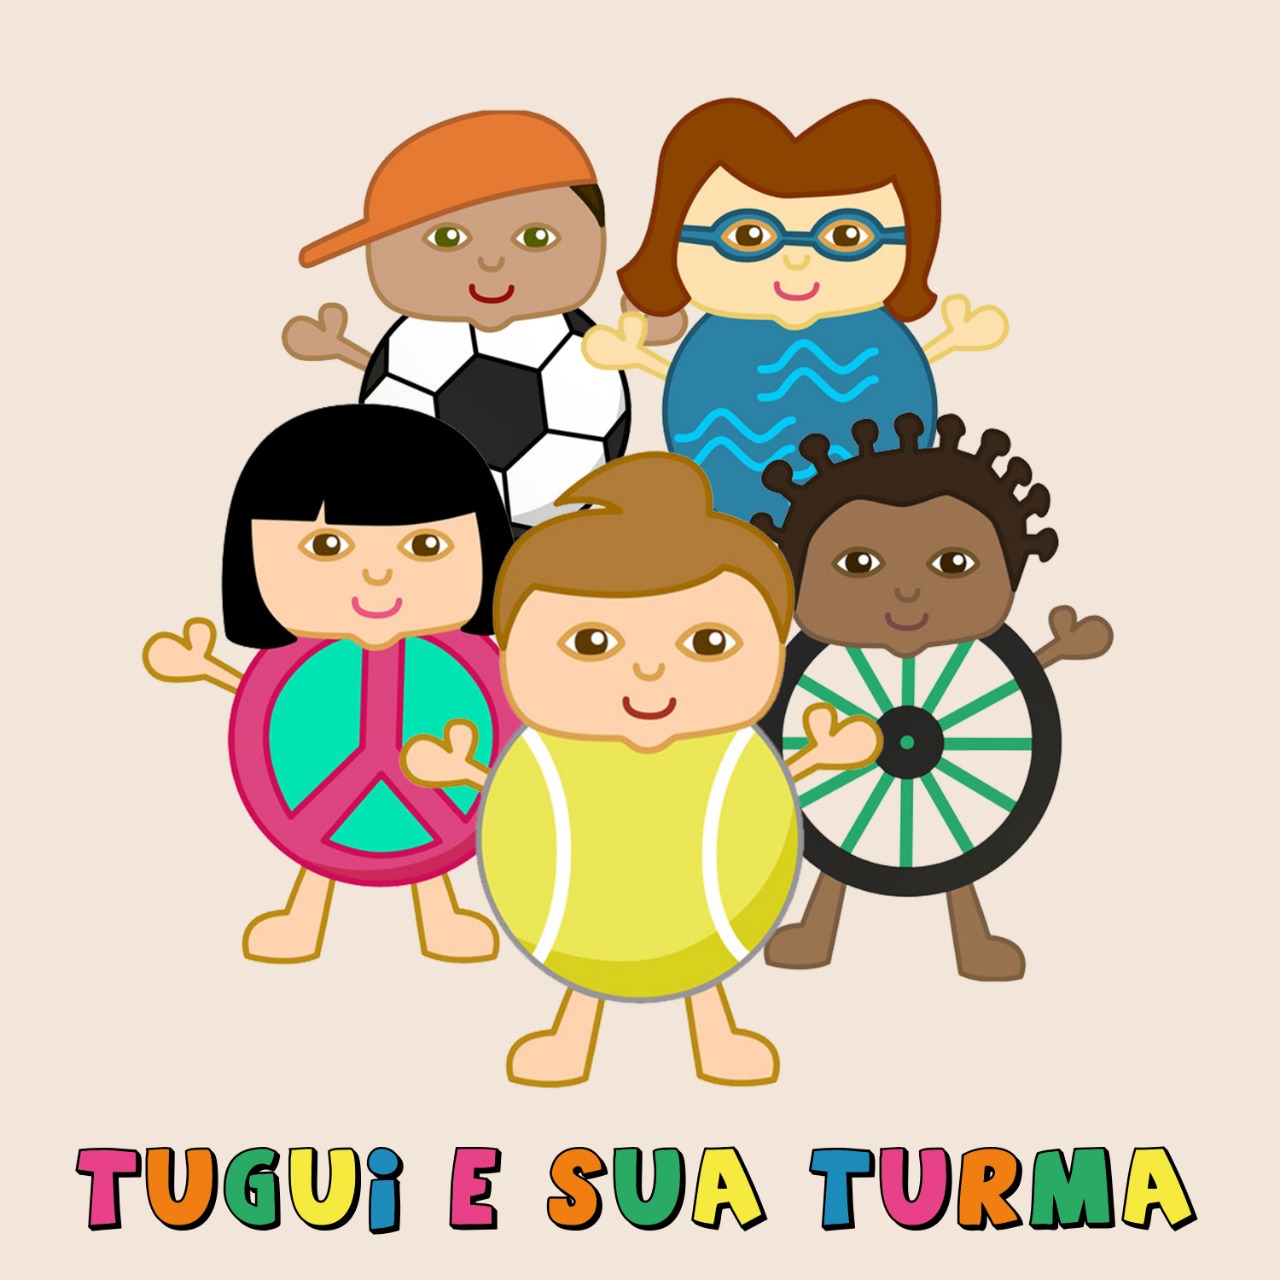 Idealizado por Rafaela Meccia, 'Turma do Tugui' lança primeiro single nesta semana